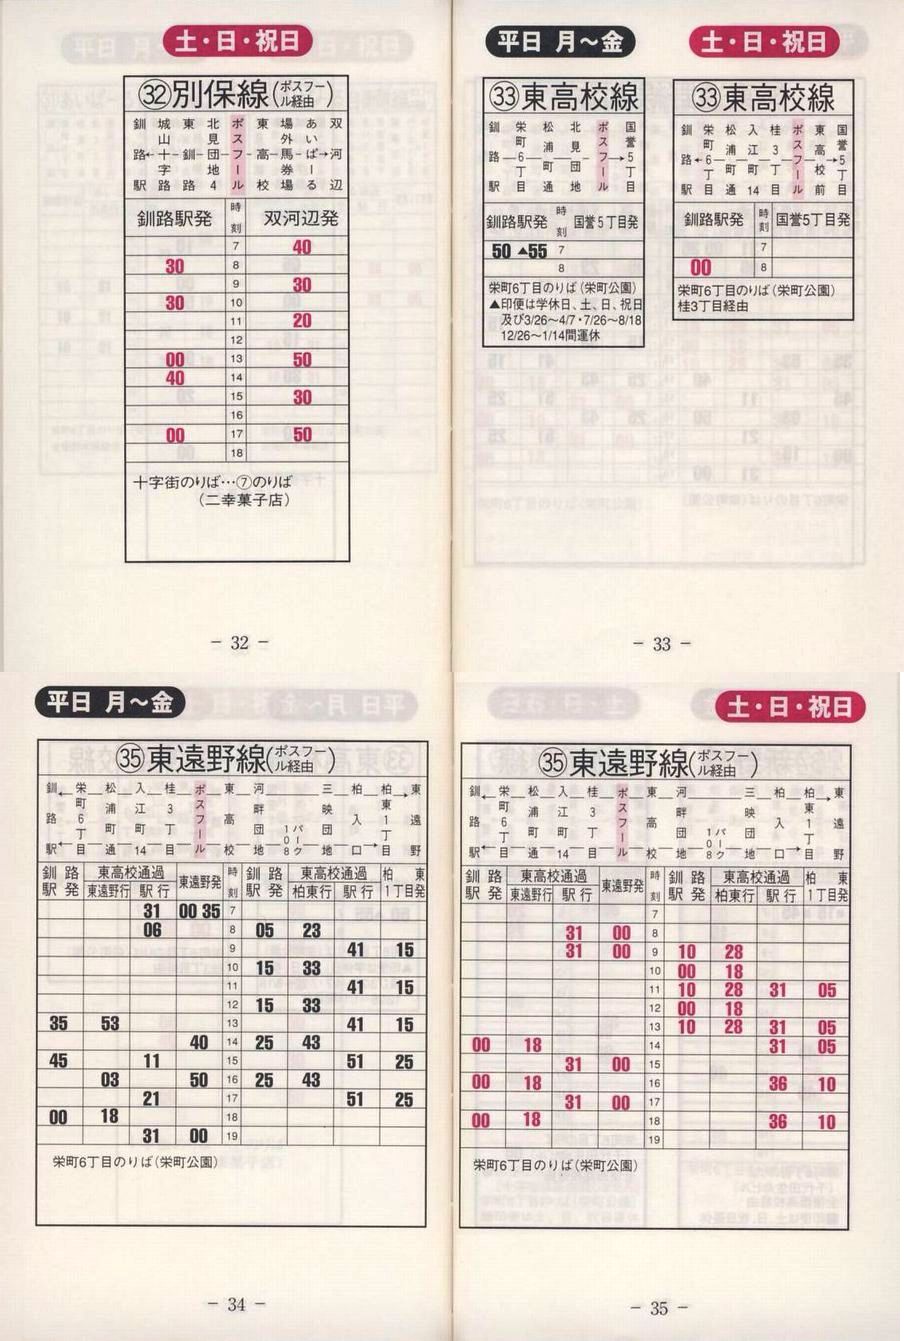 2003-04-22改正_くしろバス_冊子時刻表_32-35